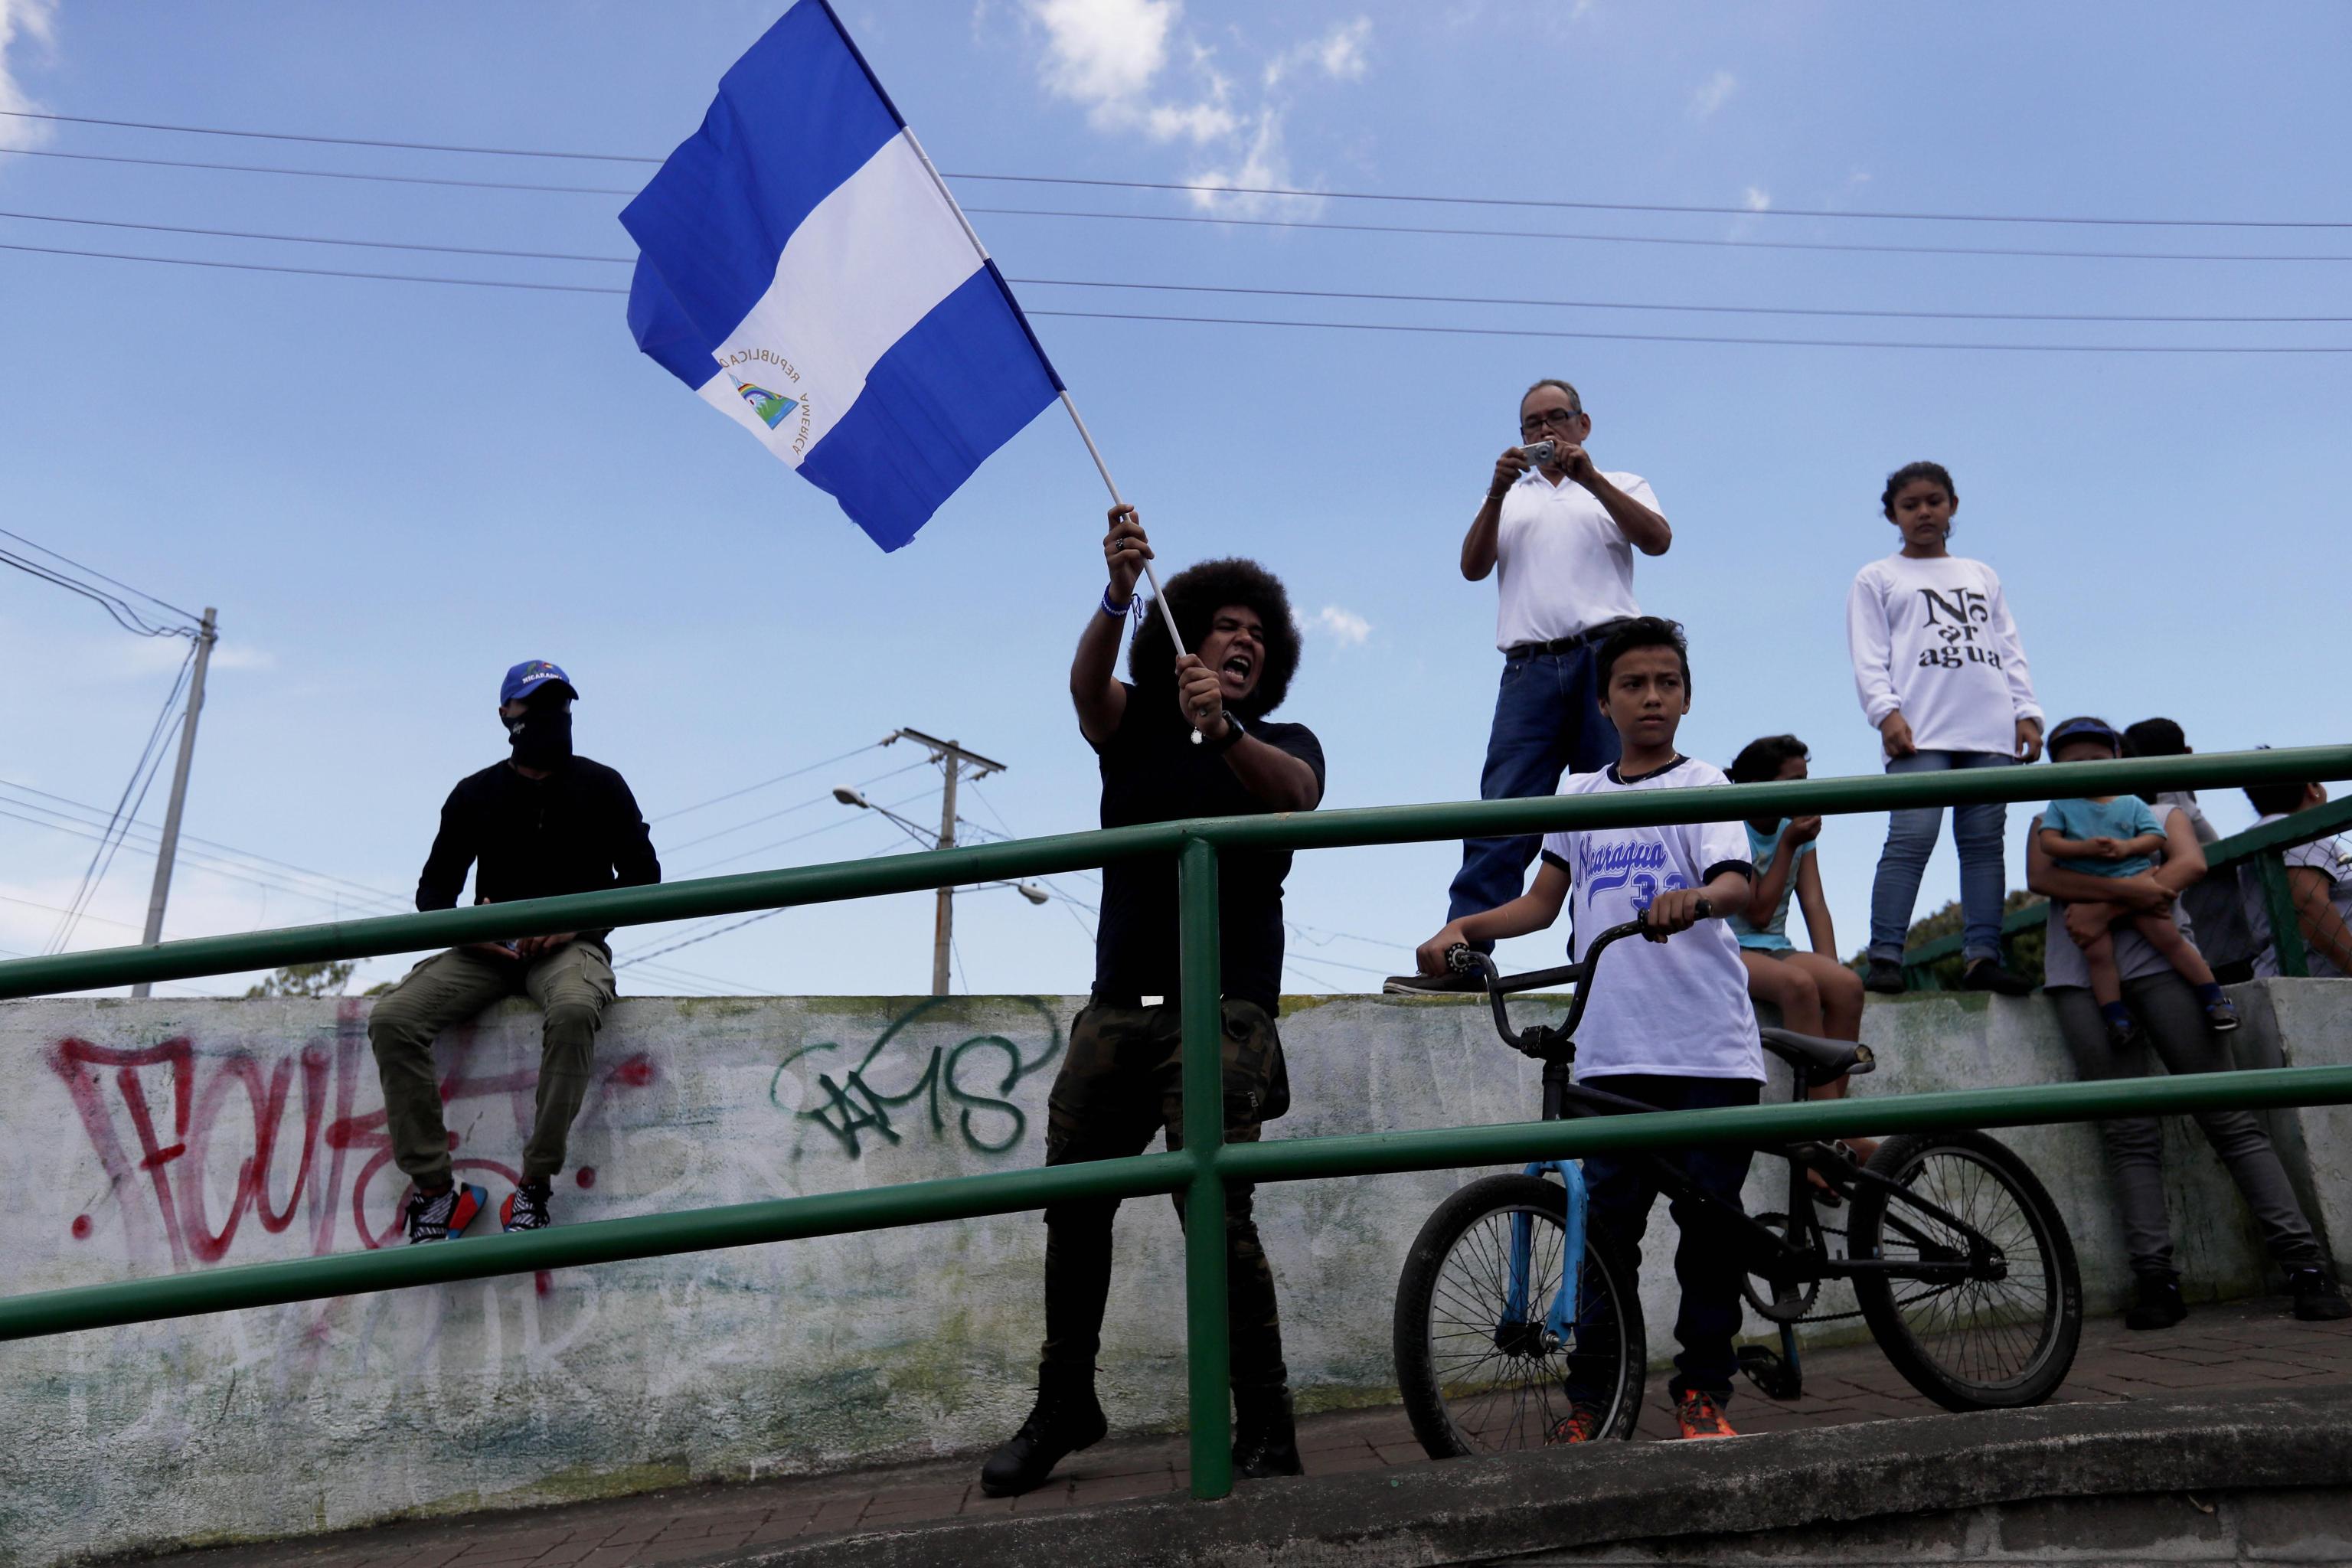 Un giovane manifesta sventolando la bandiera del paese centroamericano.